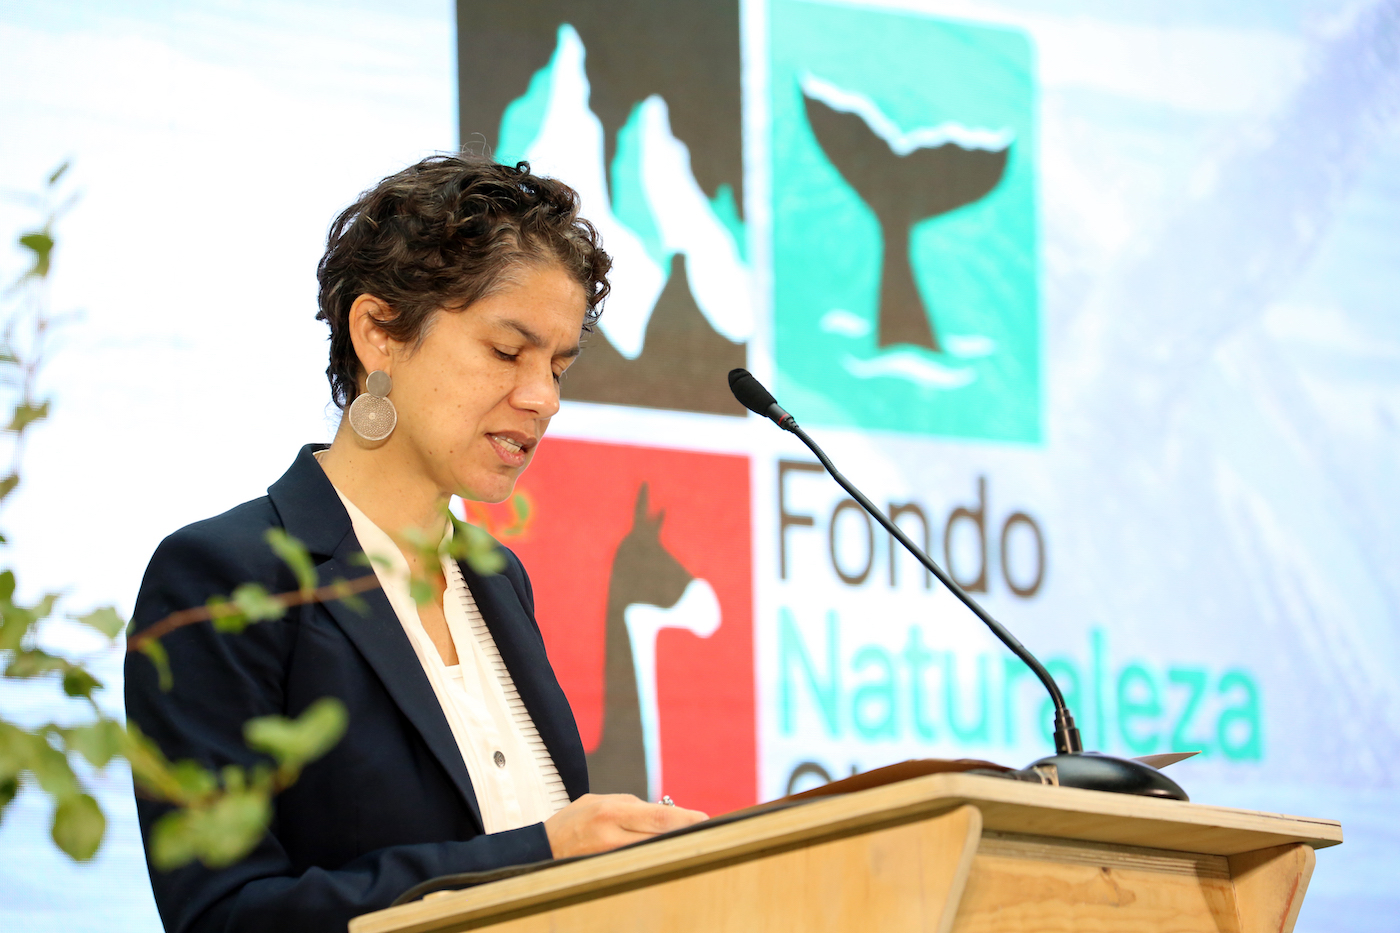 La ministra de Medio Ambiente de Chile, Maisa Rojas, hablando en el evento de lanzamiento el 4 de abril en Santiago. Foto: Fondo Naturaleza Chile